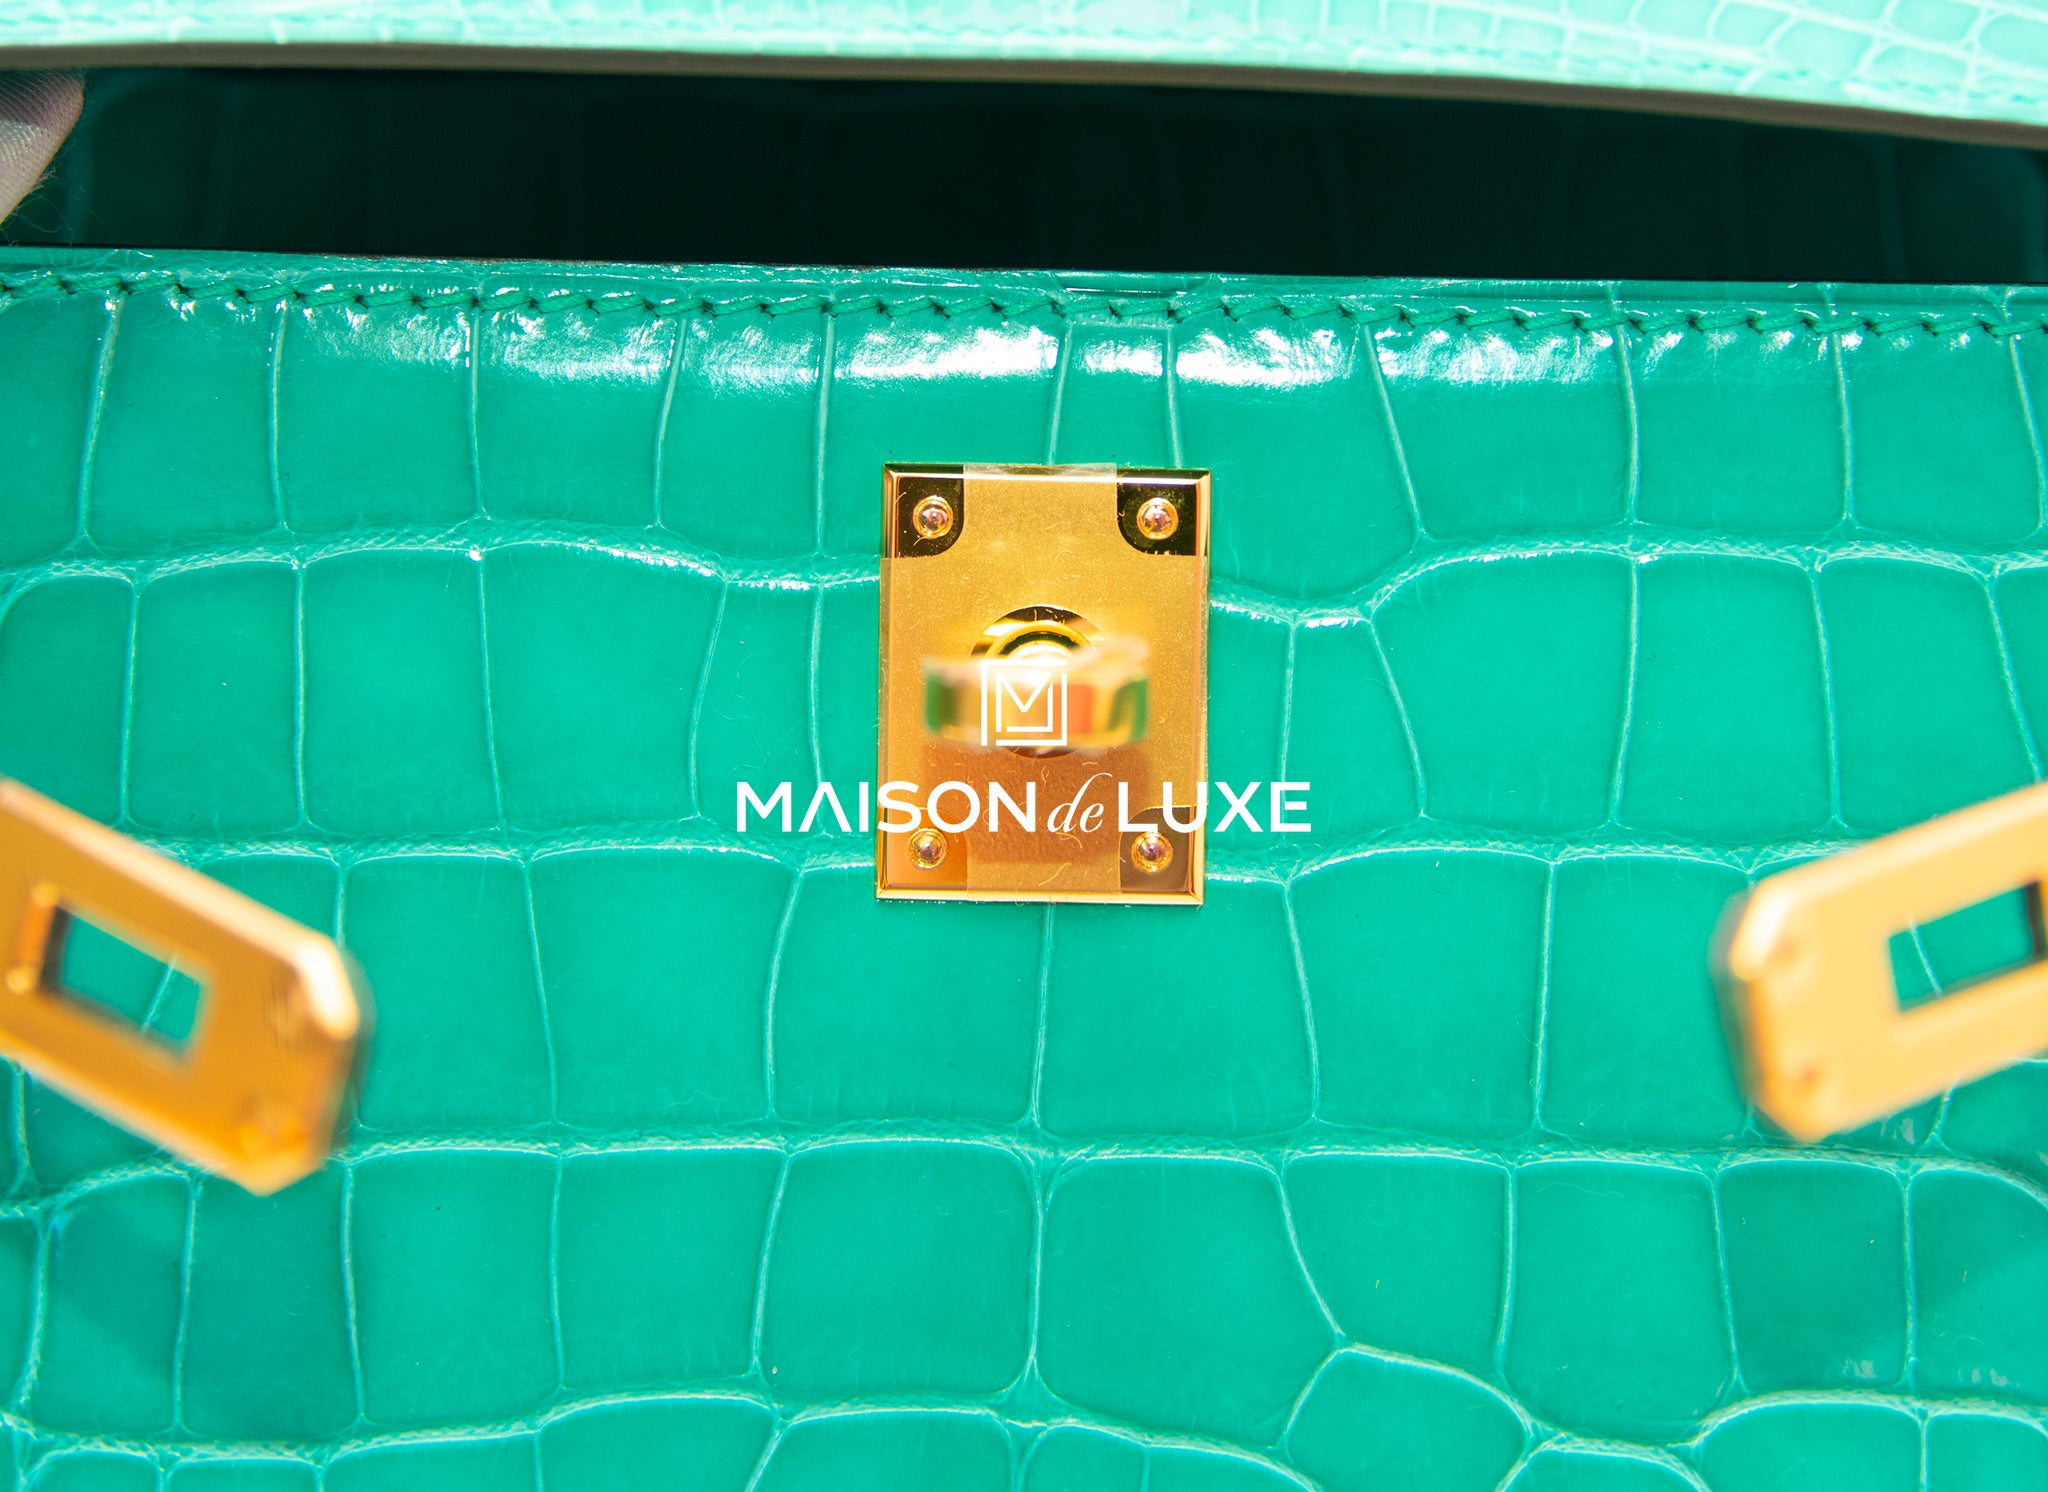 Luxury Maison Ltd. - New 6O vert jade shiny Croc Kelly pochette ghw  #kellypochette #vertjade